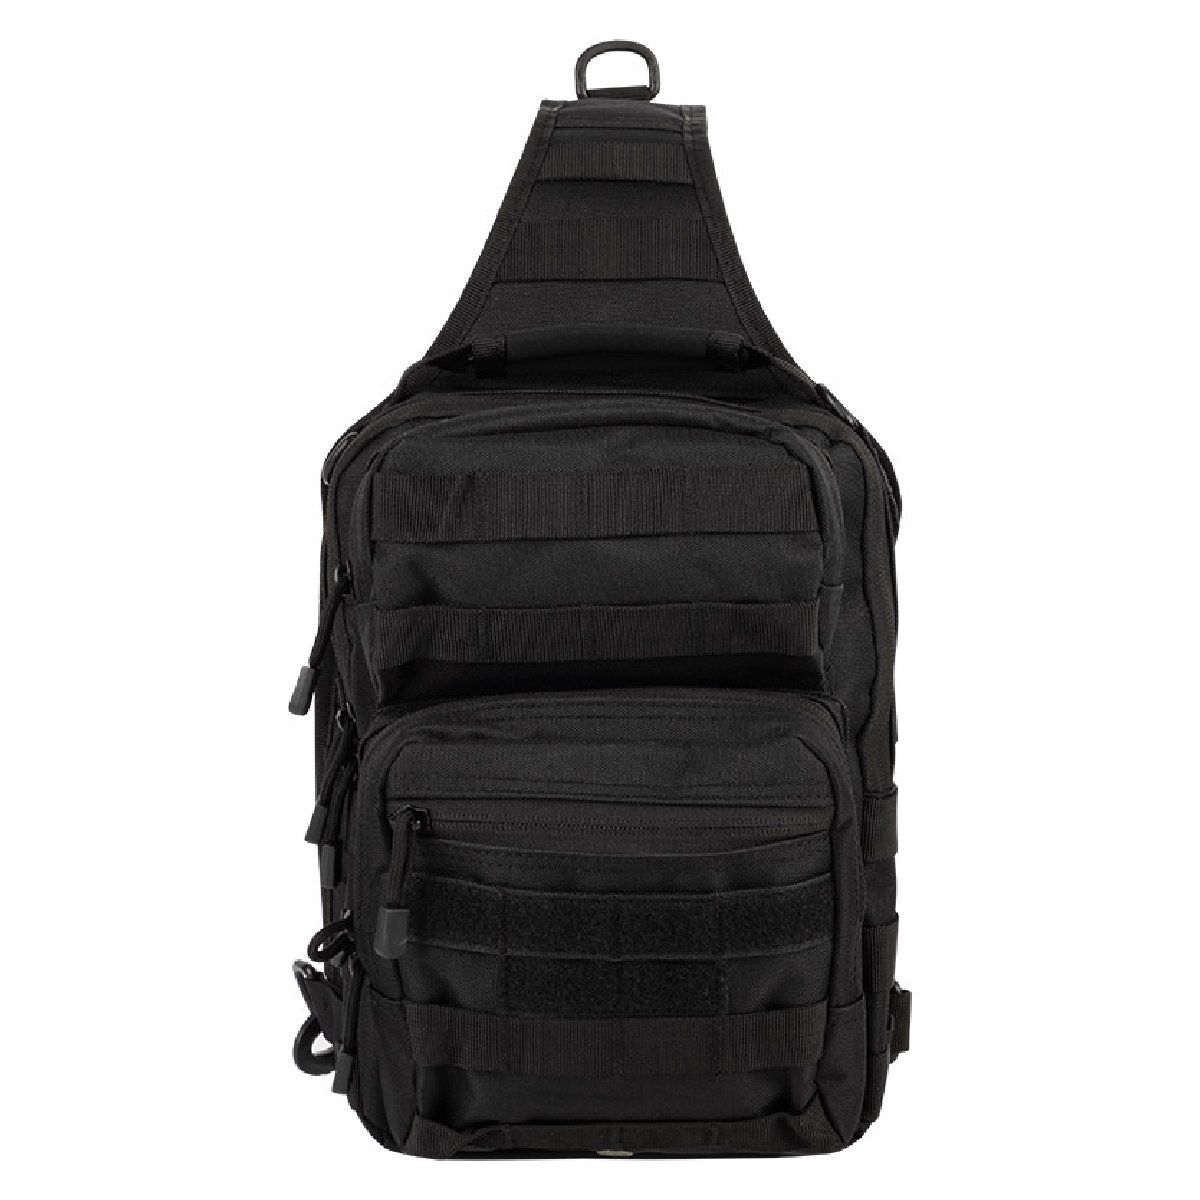 Рюкзак BL102, цвет черный, объем 12л (105605)